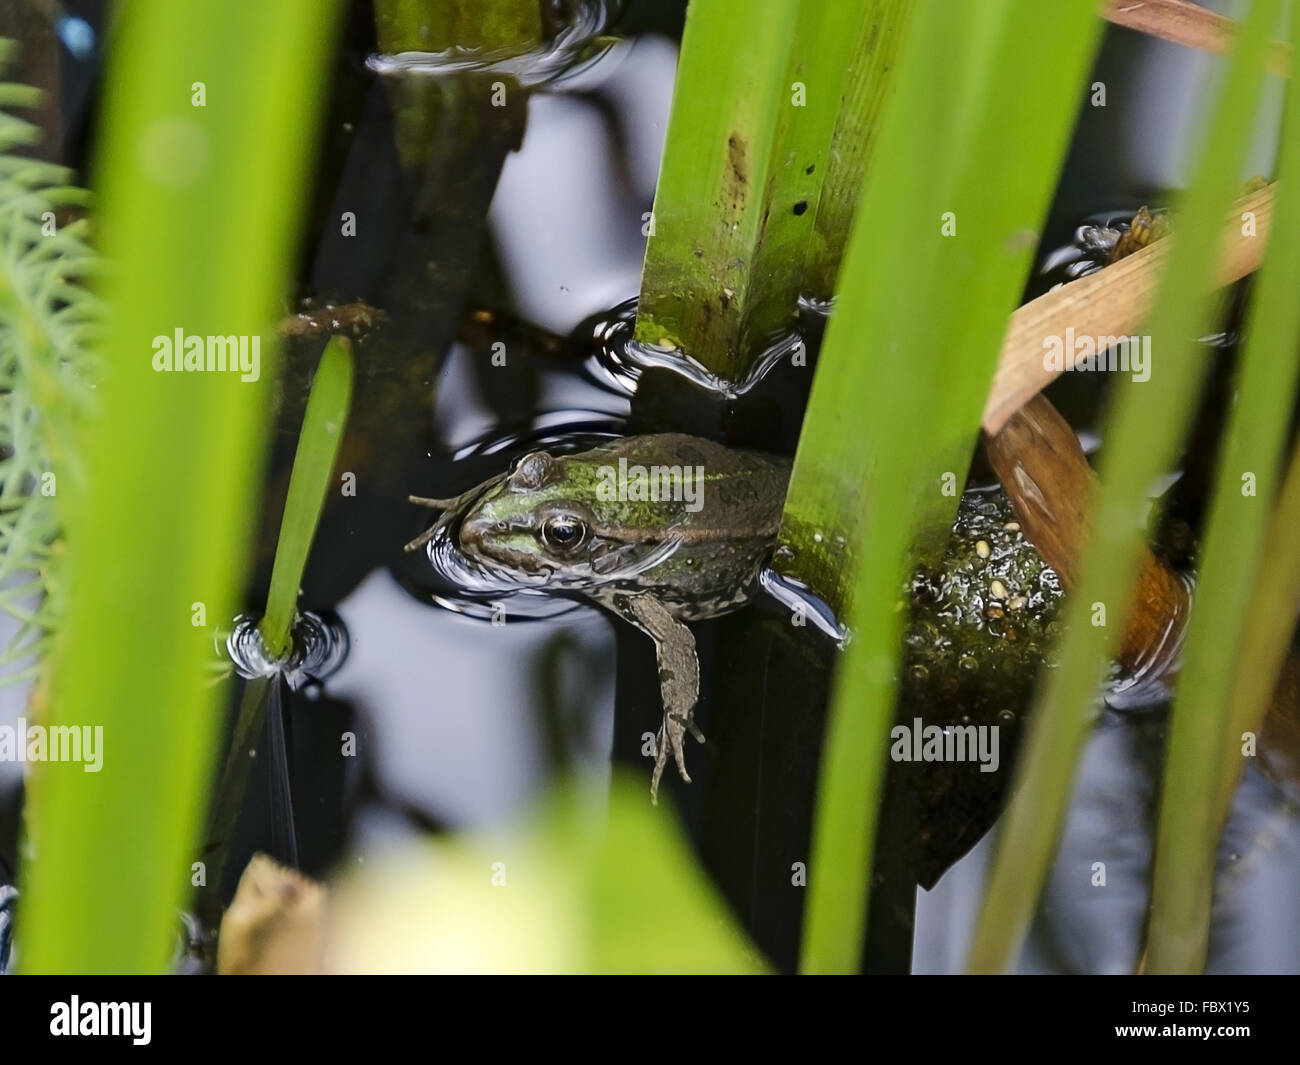 Rana verde in acqua tra waterplants Foto Stock